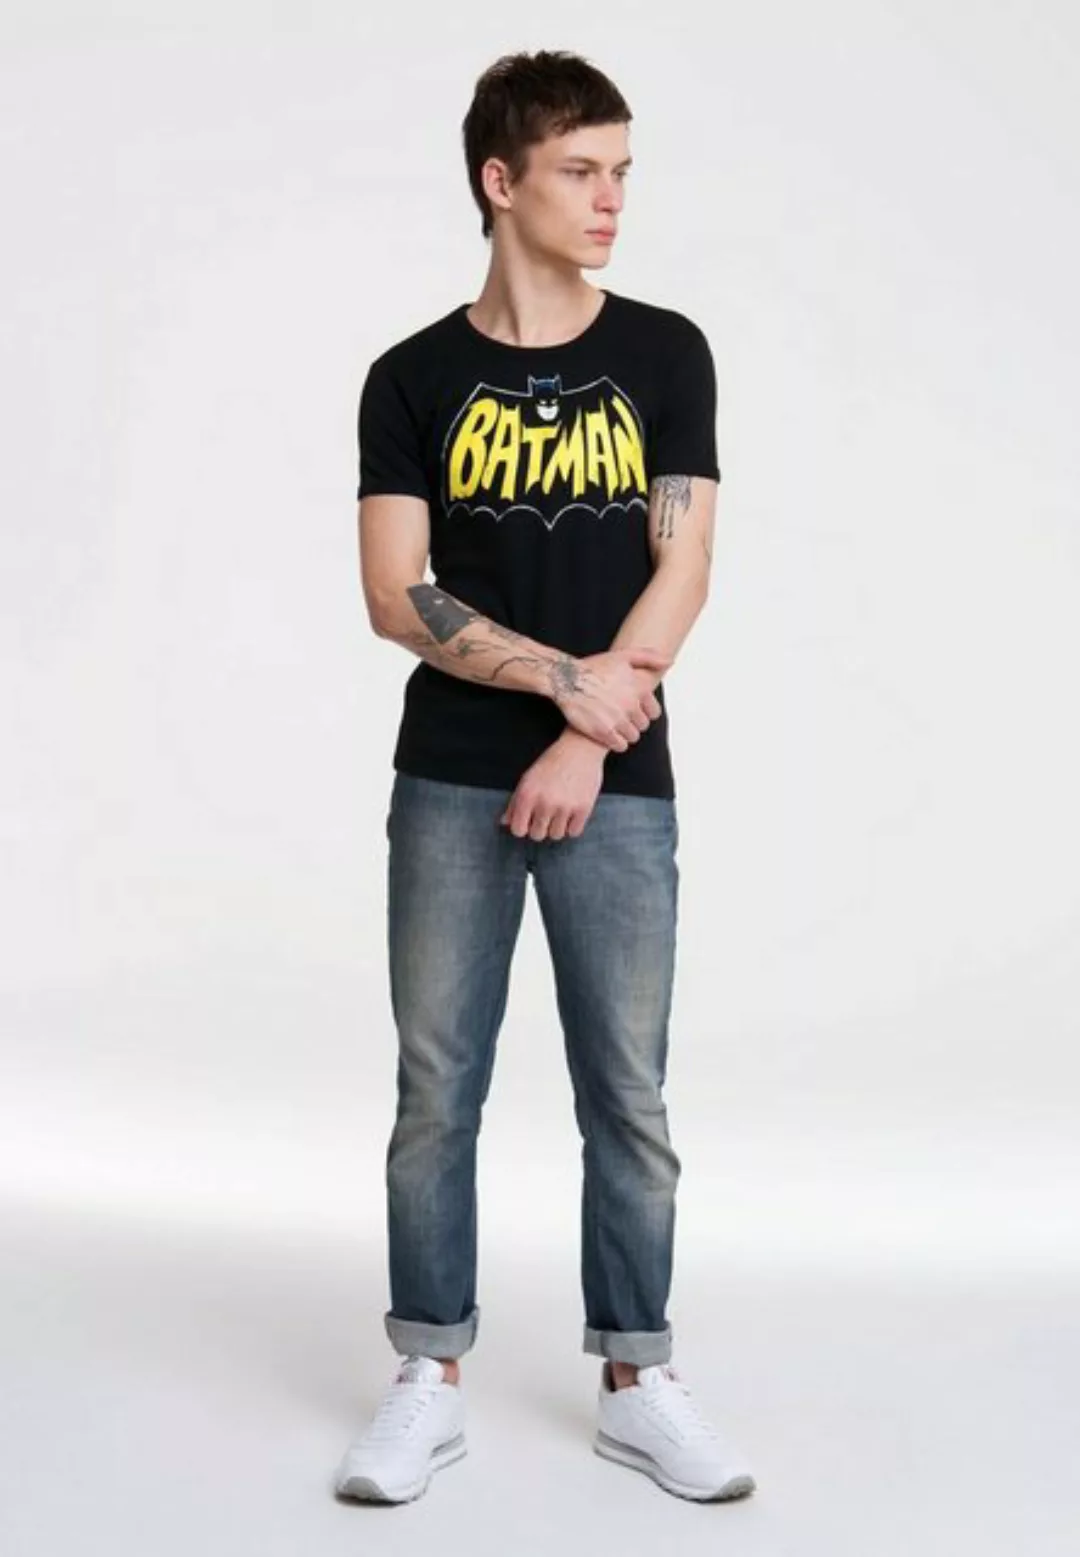 LOGOSHIRT T-Shirt Batman – Bat mit auffälligem Batman-Frontprint günstig online kaufen